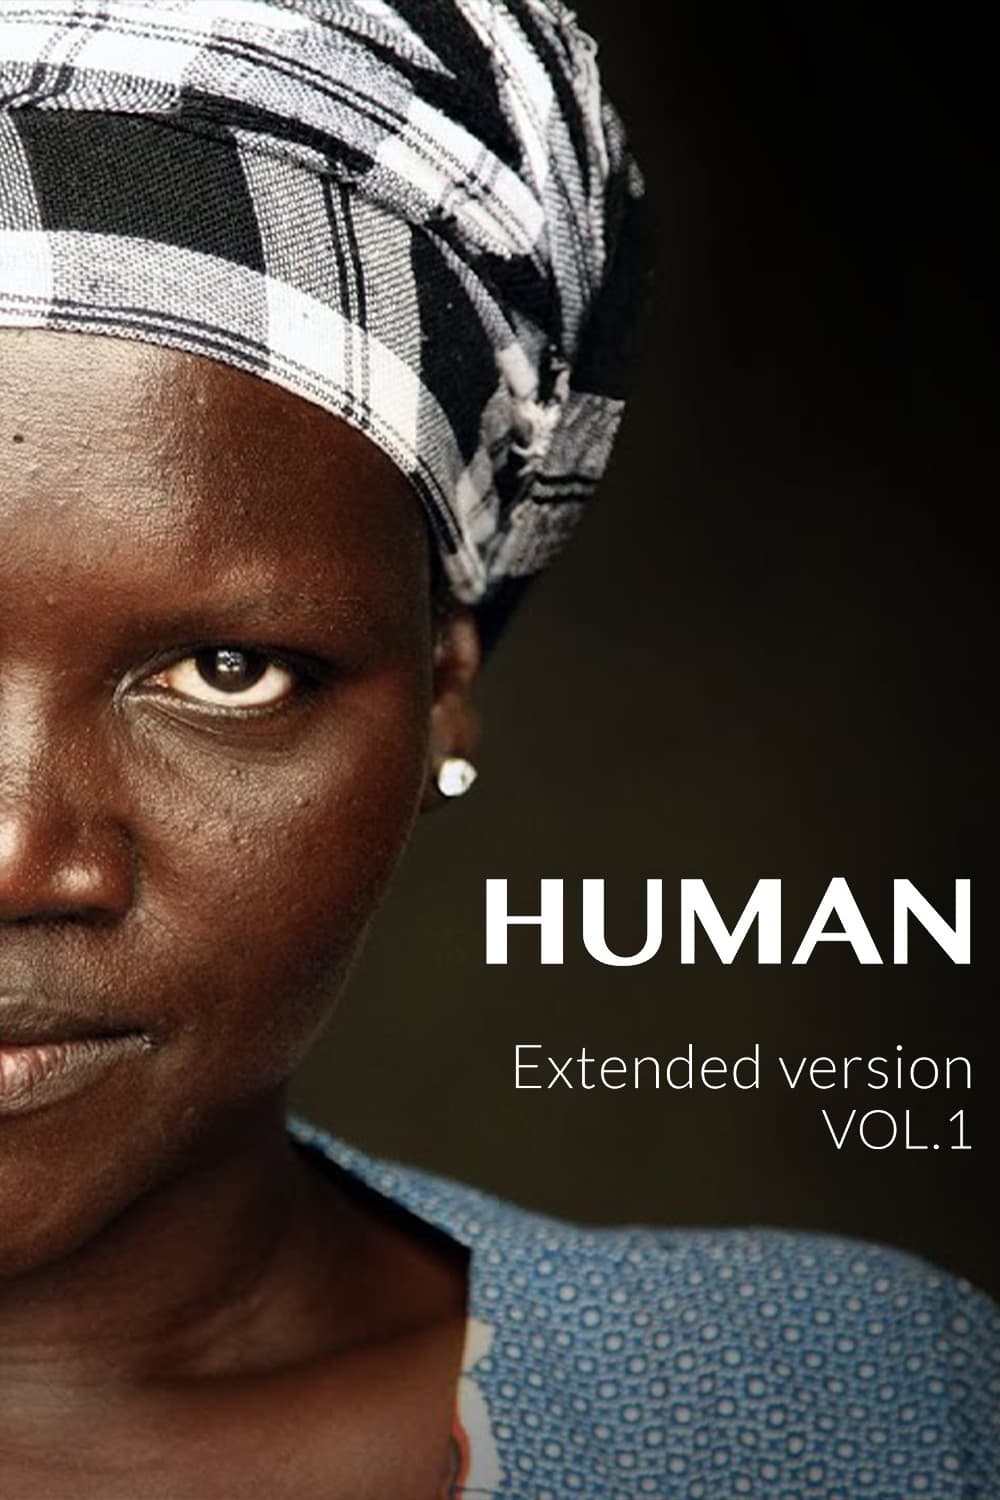 Human Vol.1